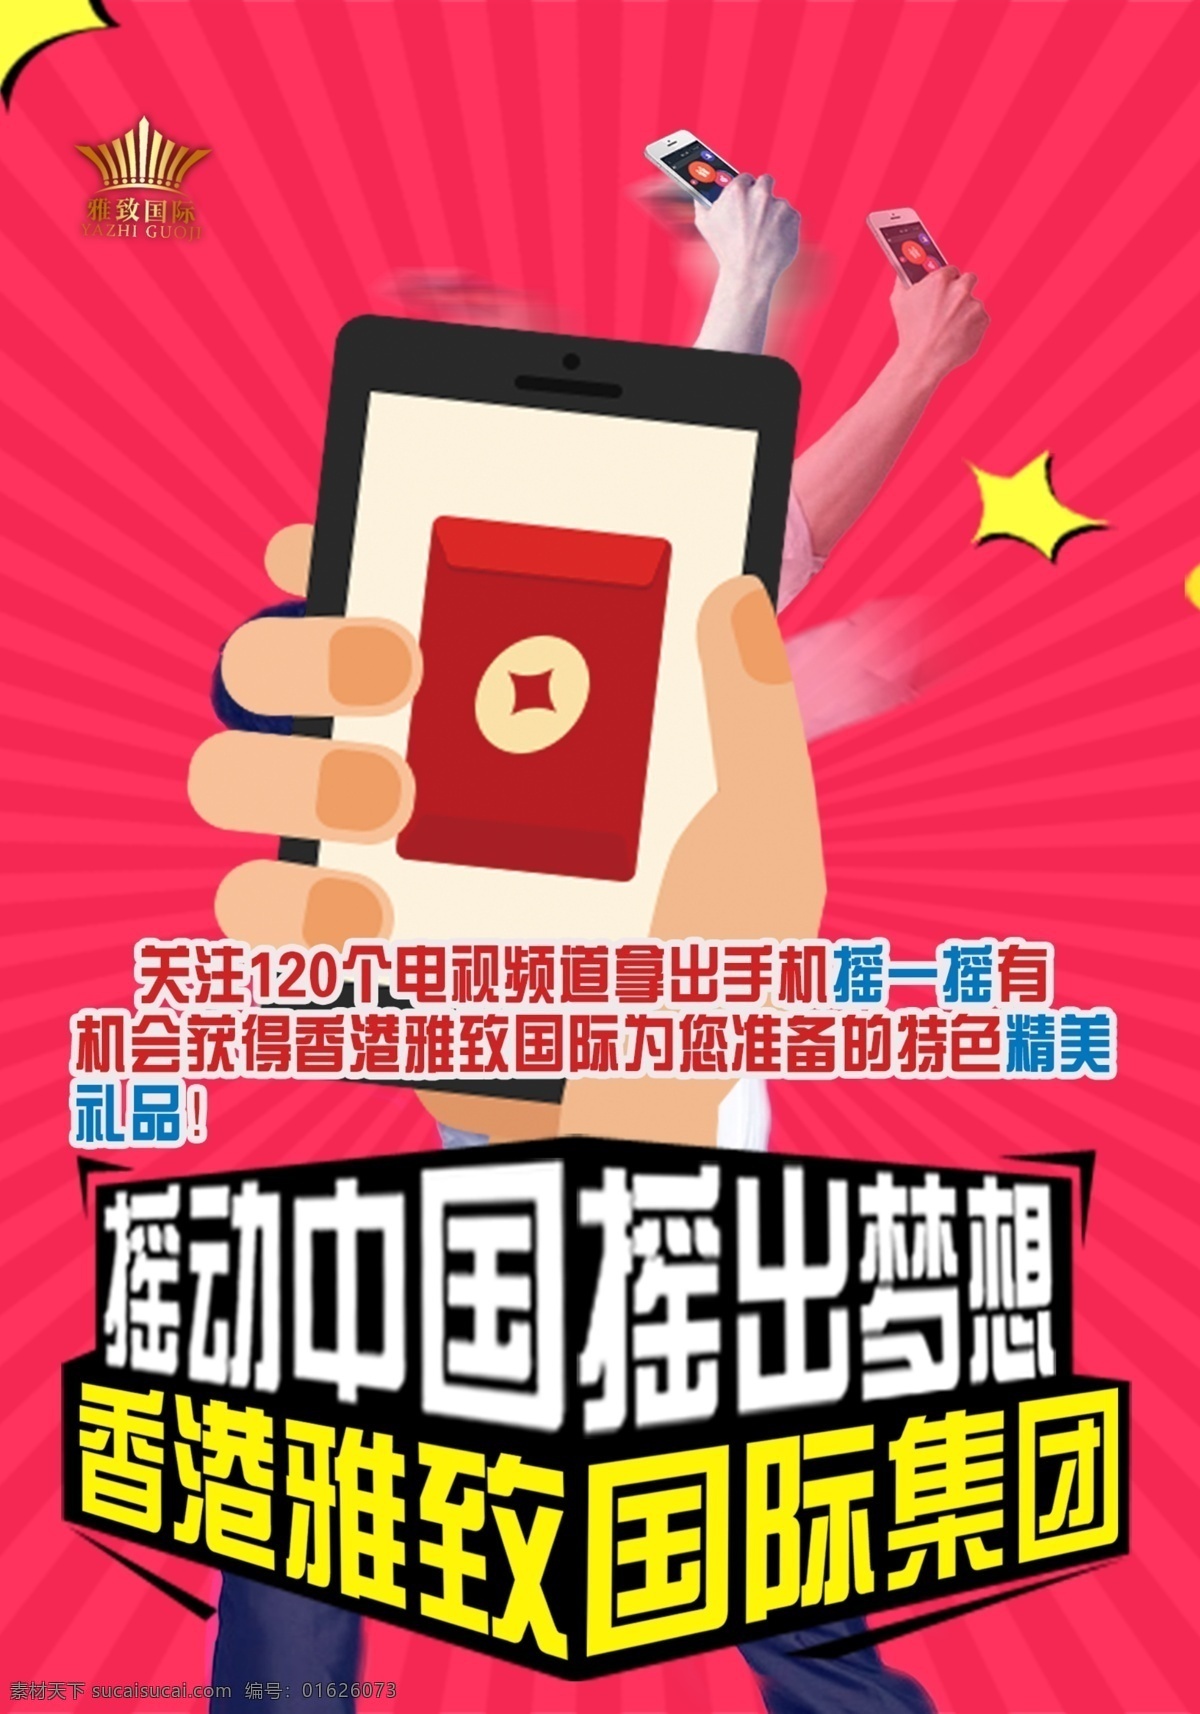 香港 雅致 国际 集团 招 代理 摇动中国 摇出梦想 手机摇一摇 红色